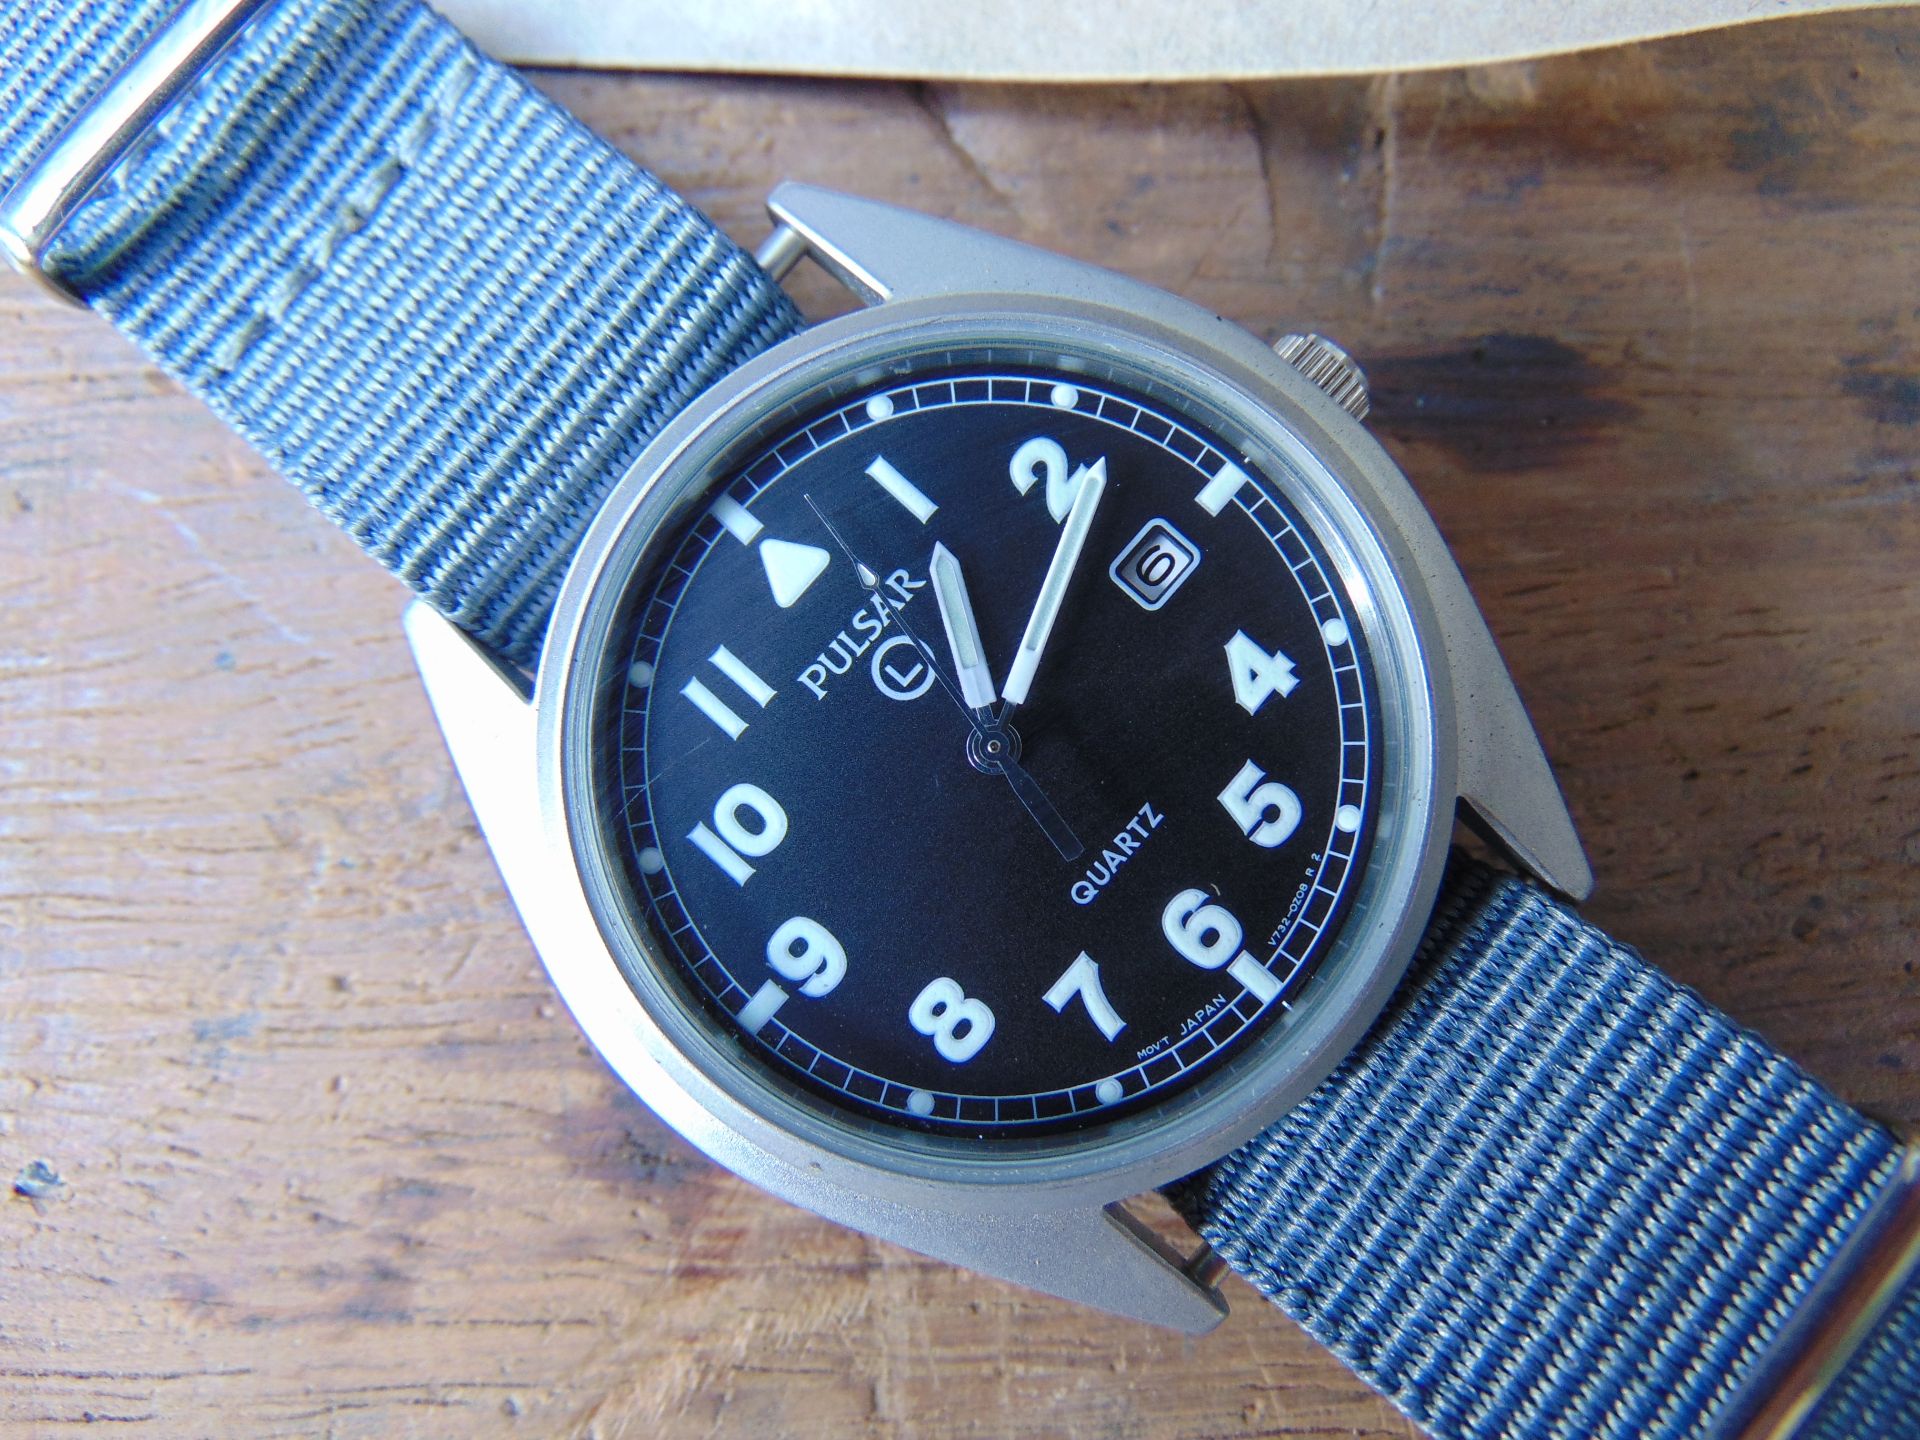 Unissued Pulsar G10 wrist watch